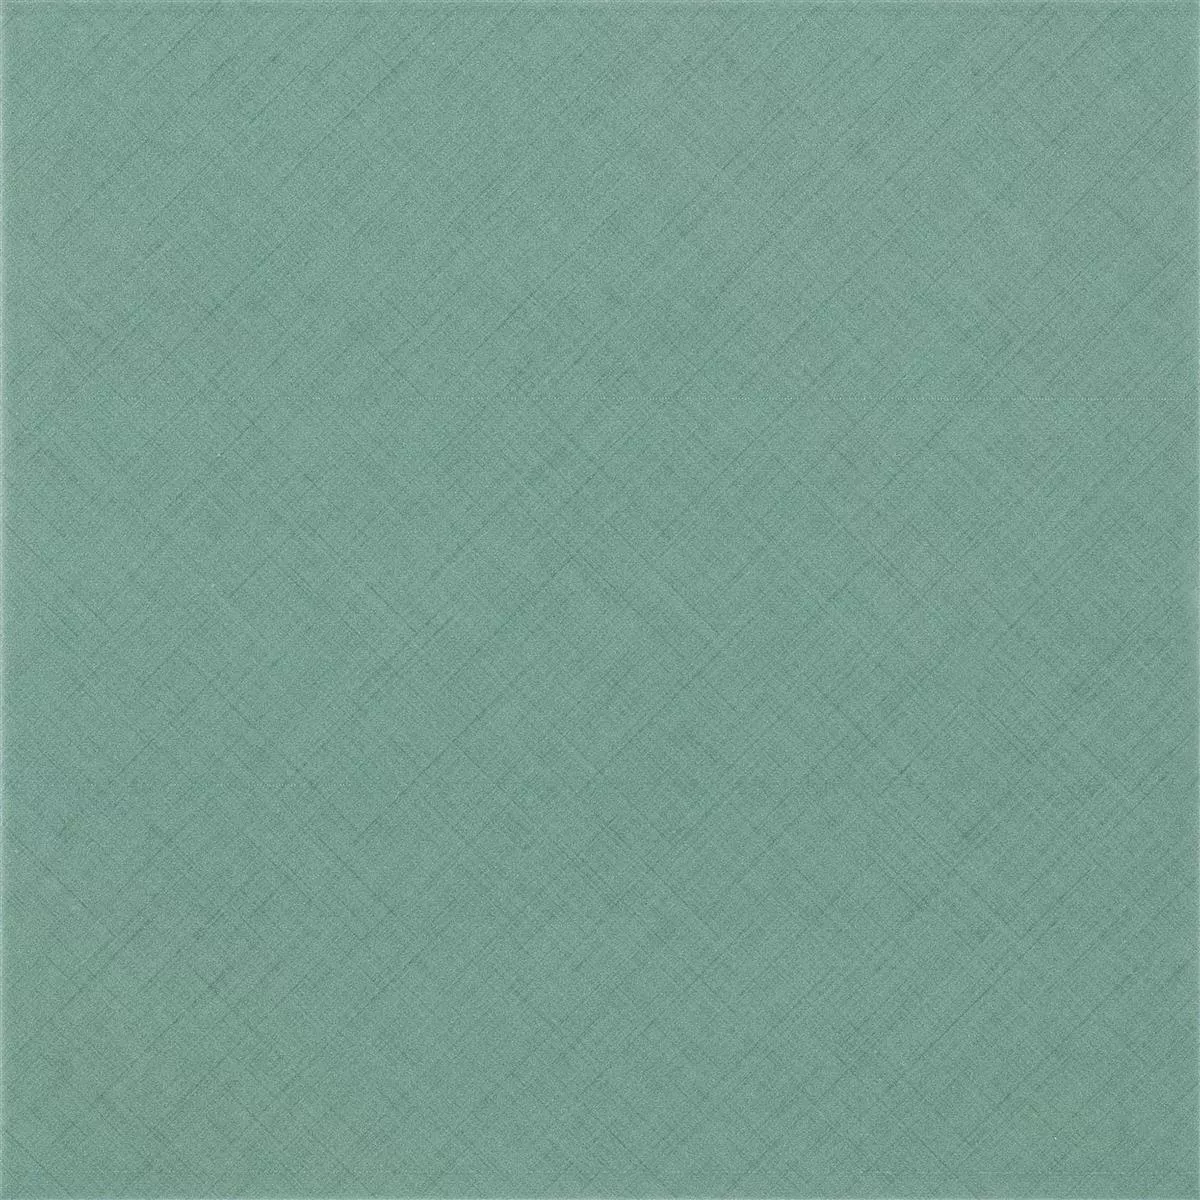 Sample Floor Tiles Flowerfield 18,5x18,5cm Green Basic Tile